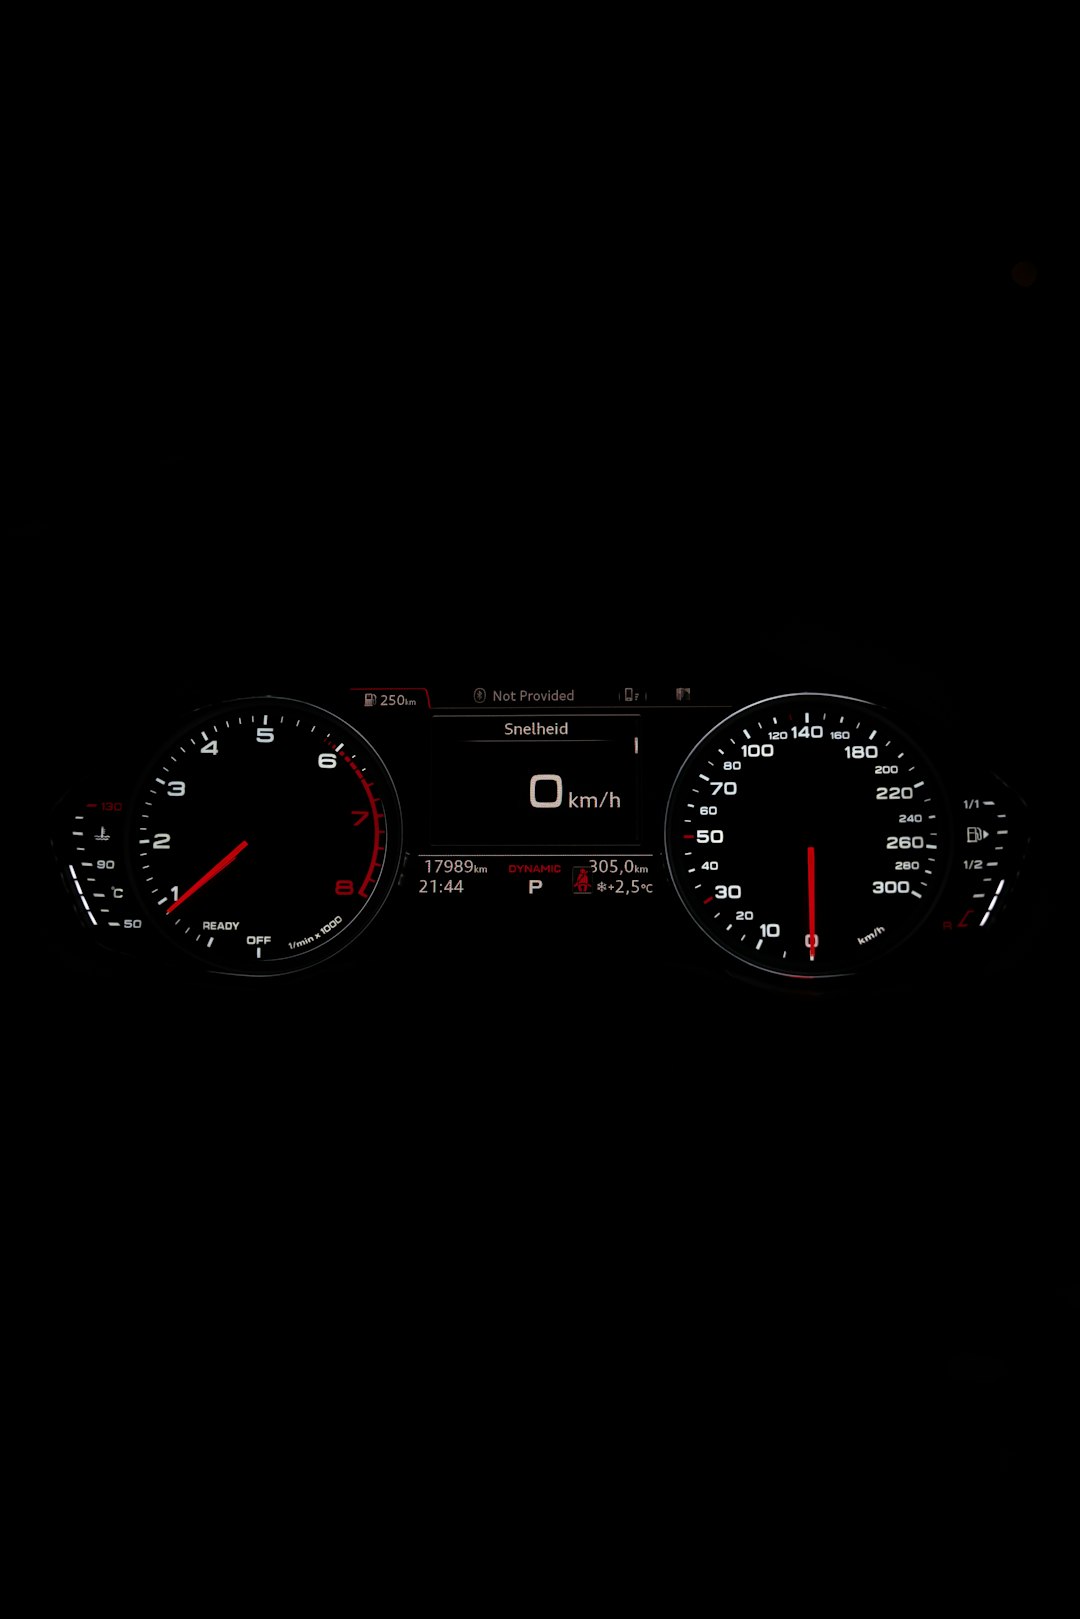 black and red analog speedometer